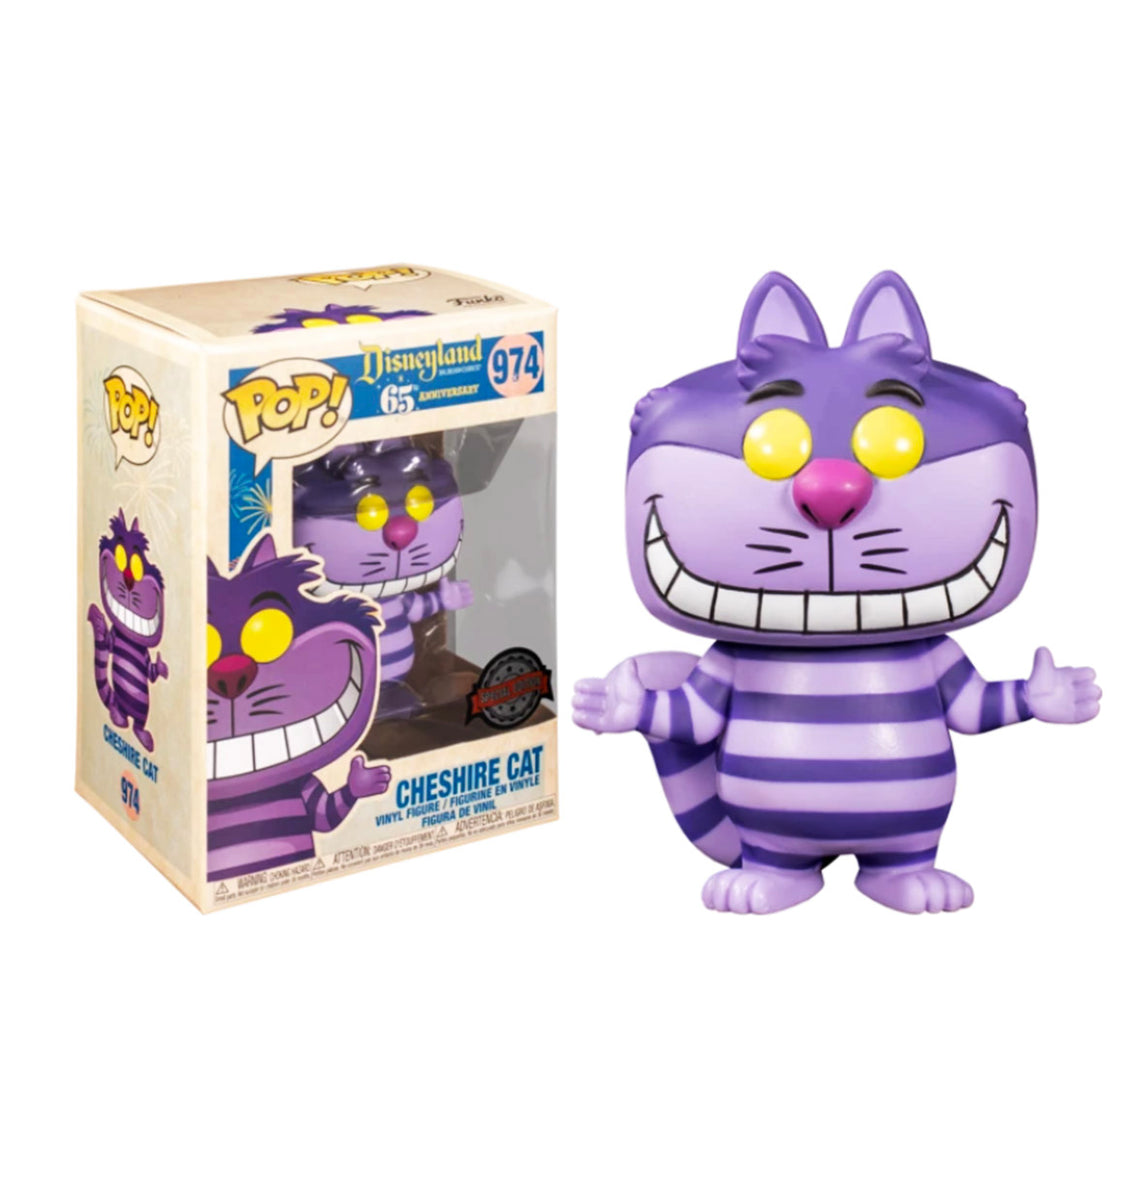 Disneyland 65th Anniversary Funko Pop! Cheshire Cat ...